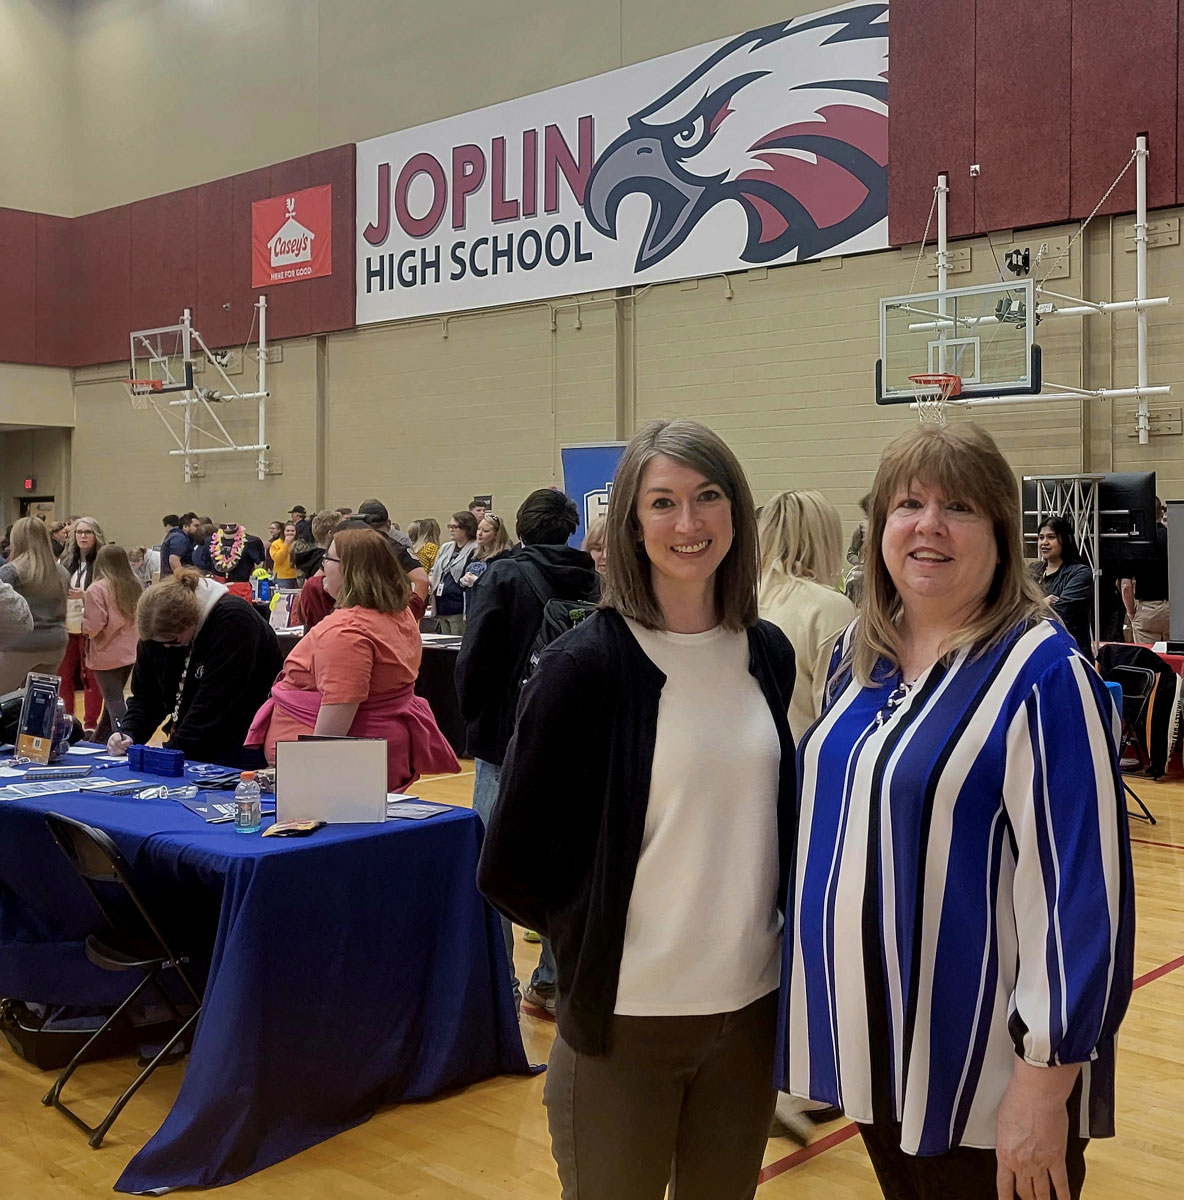 Wendy Linton and Joplin Schools representative.